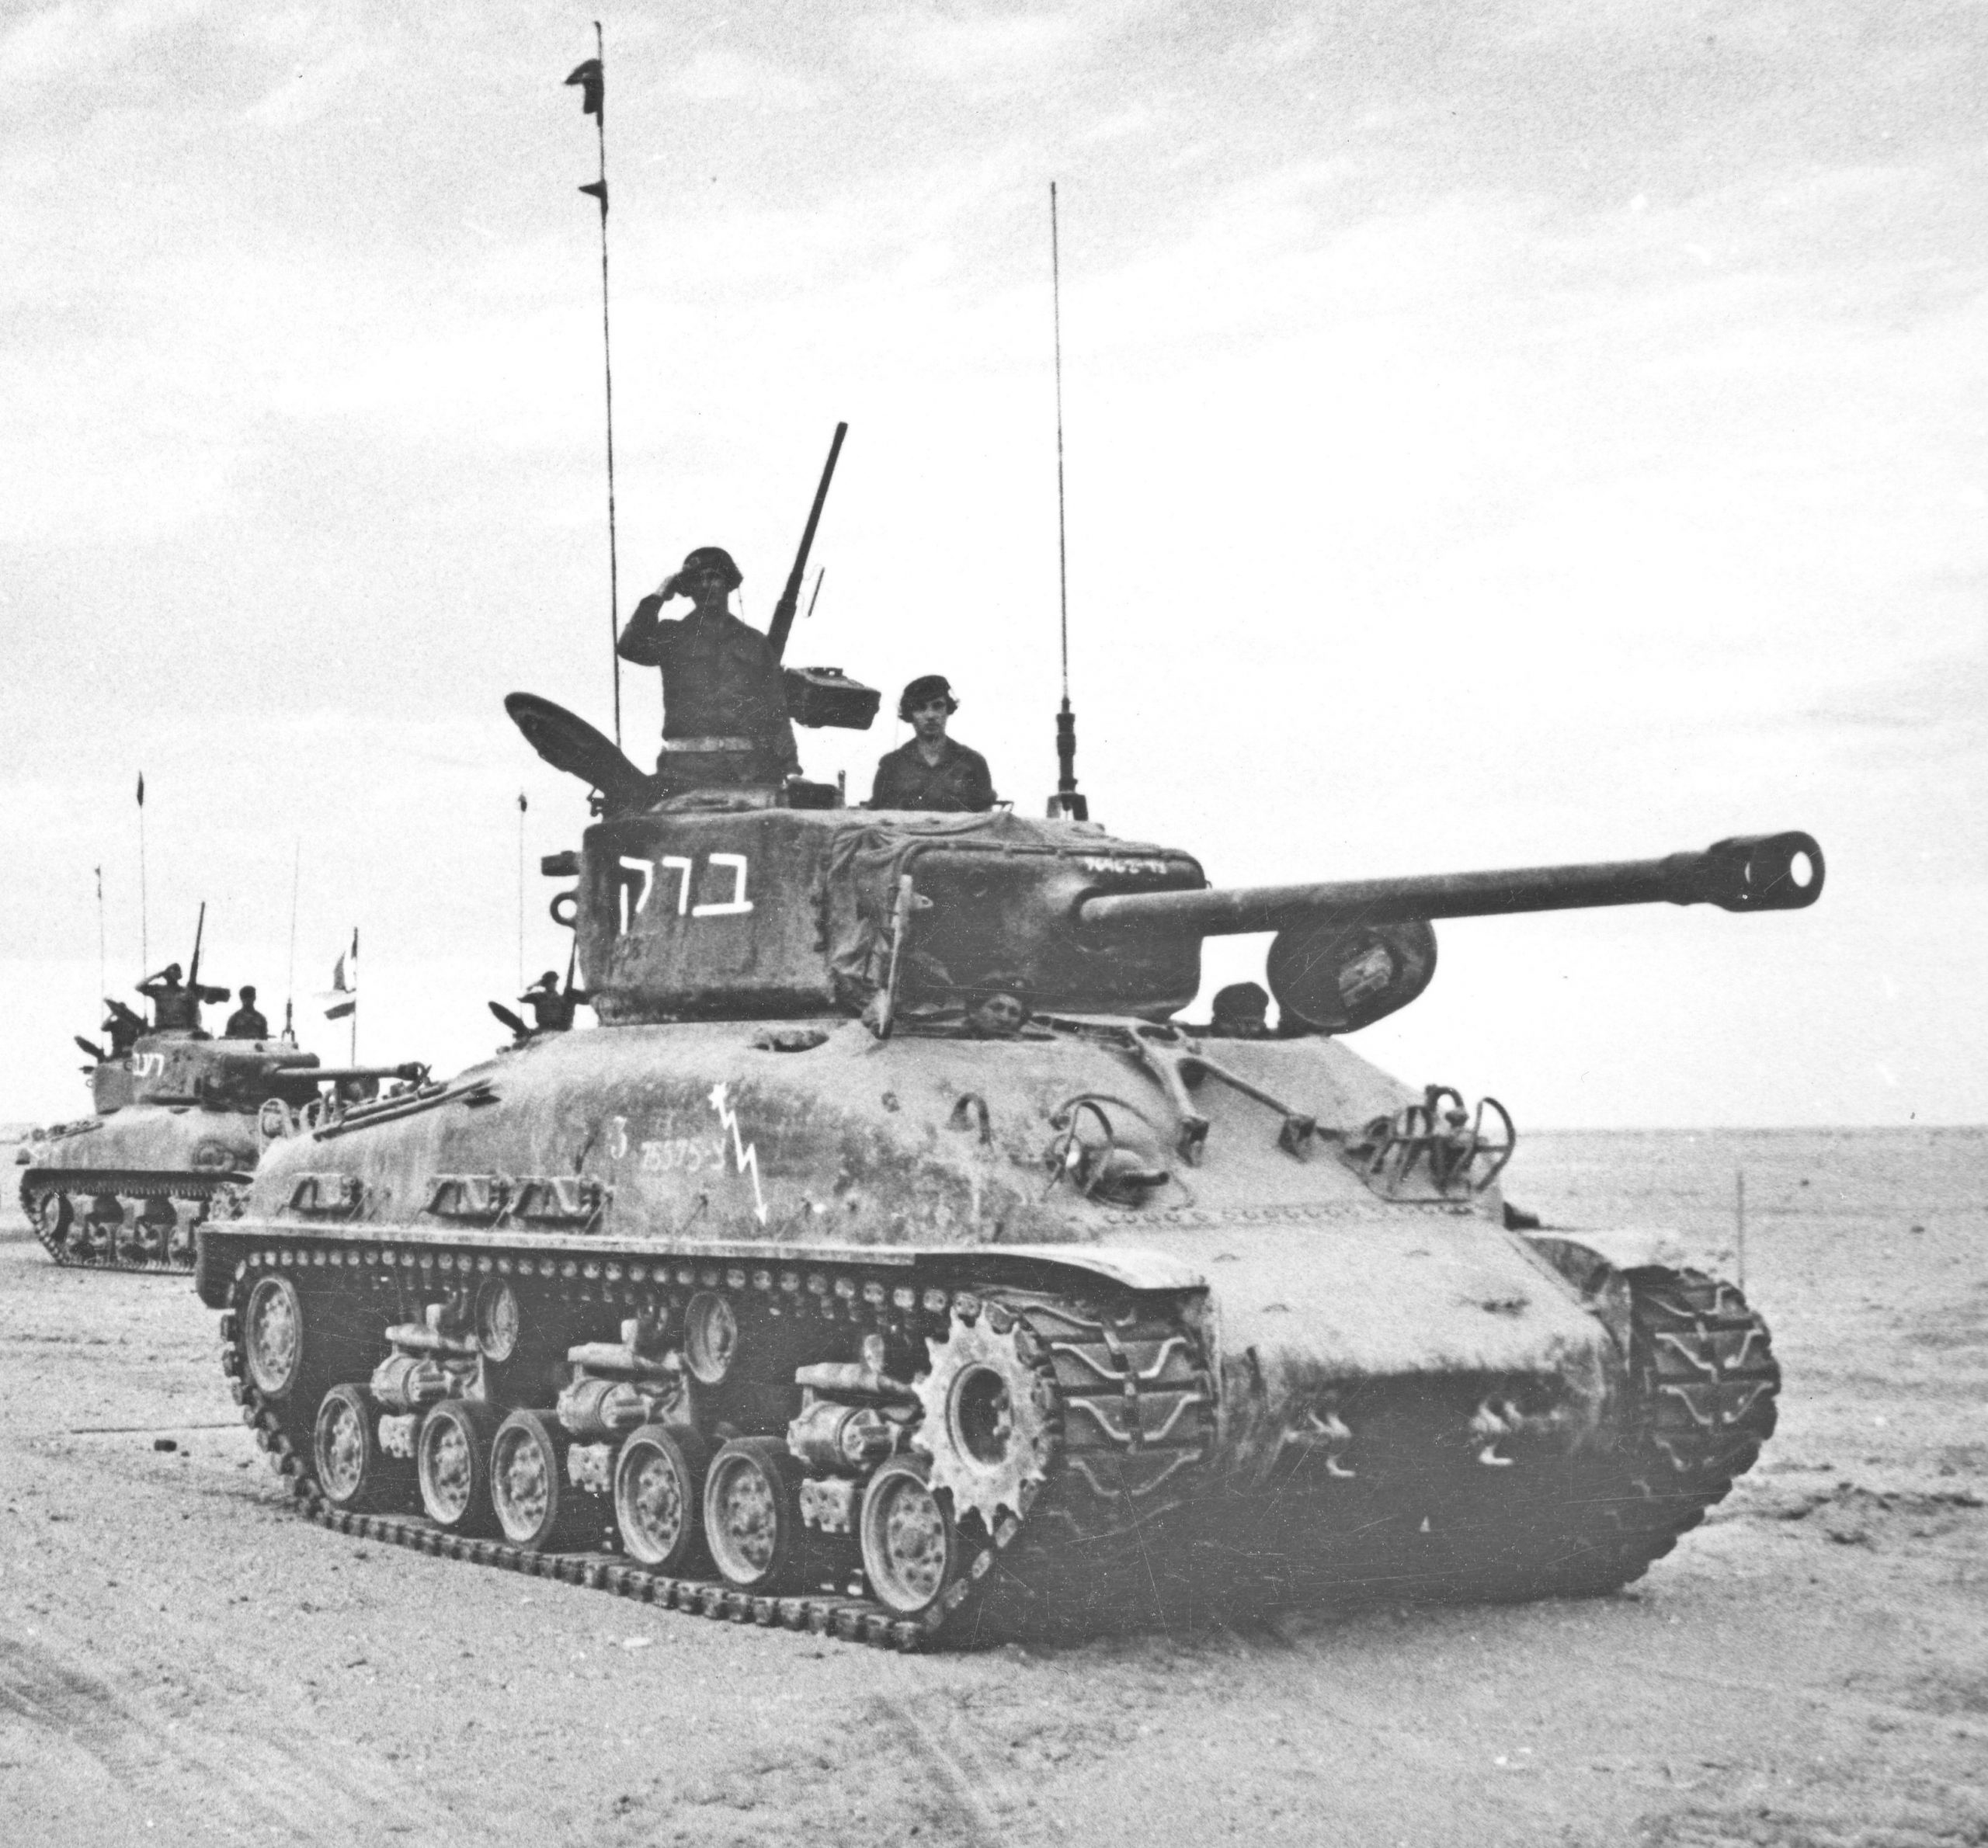 הטנק של מוישה במסדר הניצחון לאחר מלחמת סיני (מבצע קדש). הטנק אינו הטנק שהשתתף במלחמה אלא טנק שרמן משופר (מזקו"ם רחב) שסופק לאחר המלחמה. הטנק שמספרו 75575 נושא את השם "ברק" משני צידי הצריח וכן את הברק והכוכב הלקוחים מתג חטיבה 7. הטנק משמאל, בעל מזקו"ם צר, נושא את השם "רעם".